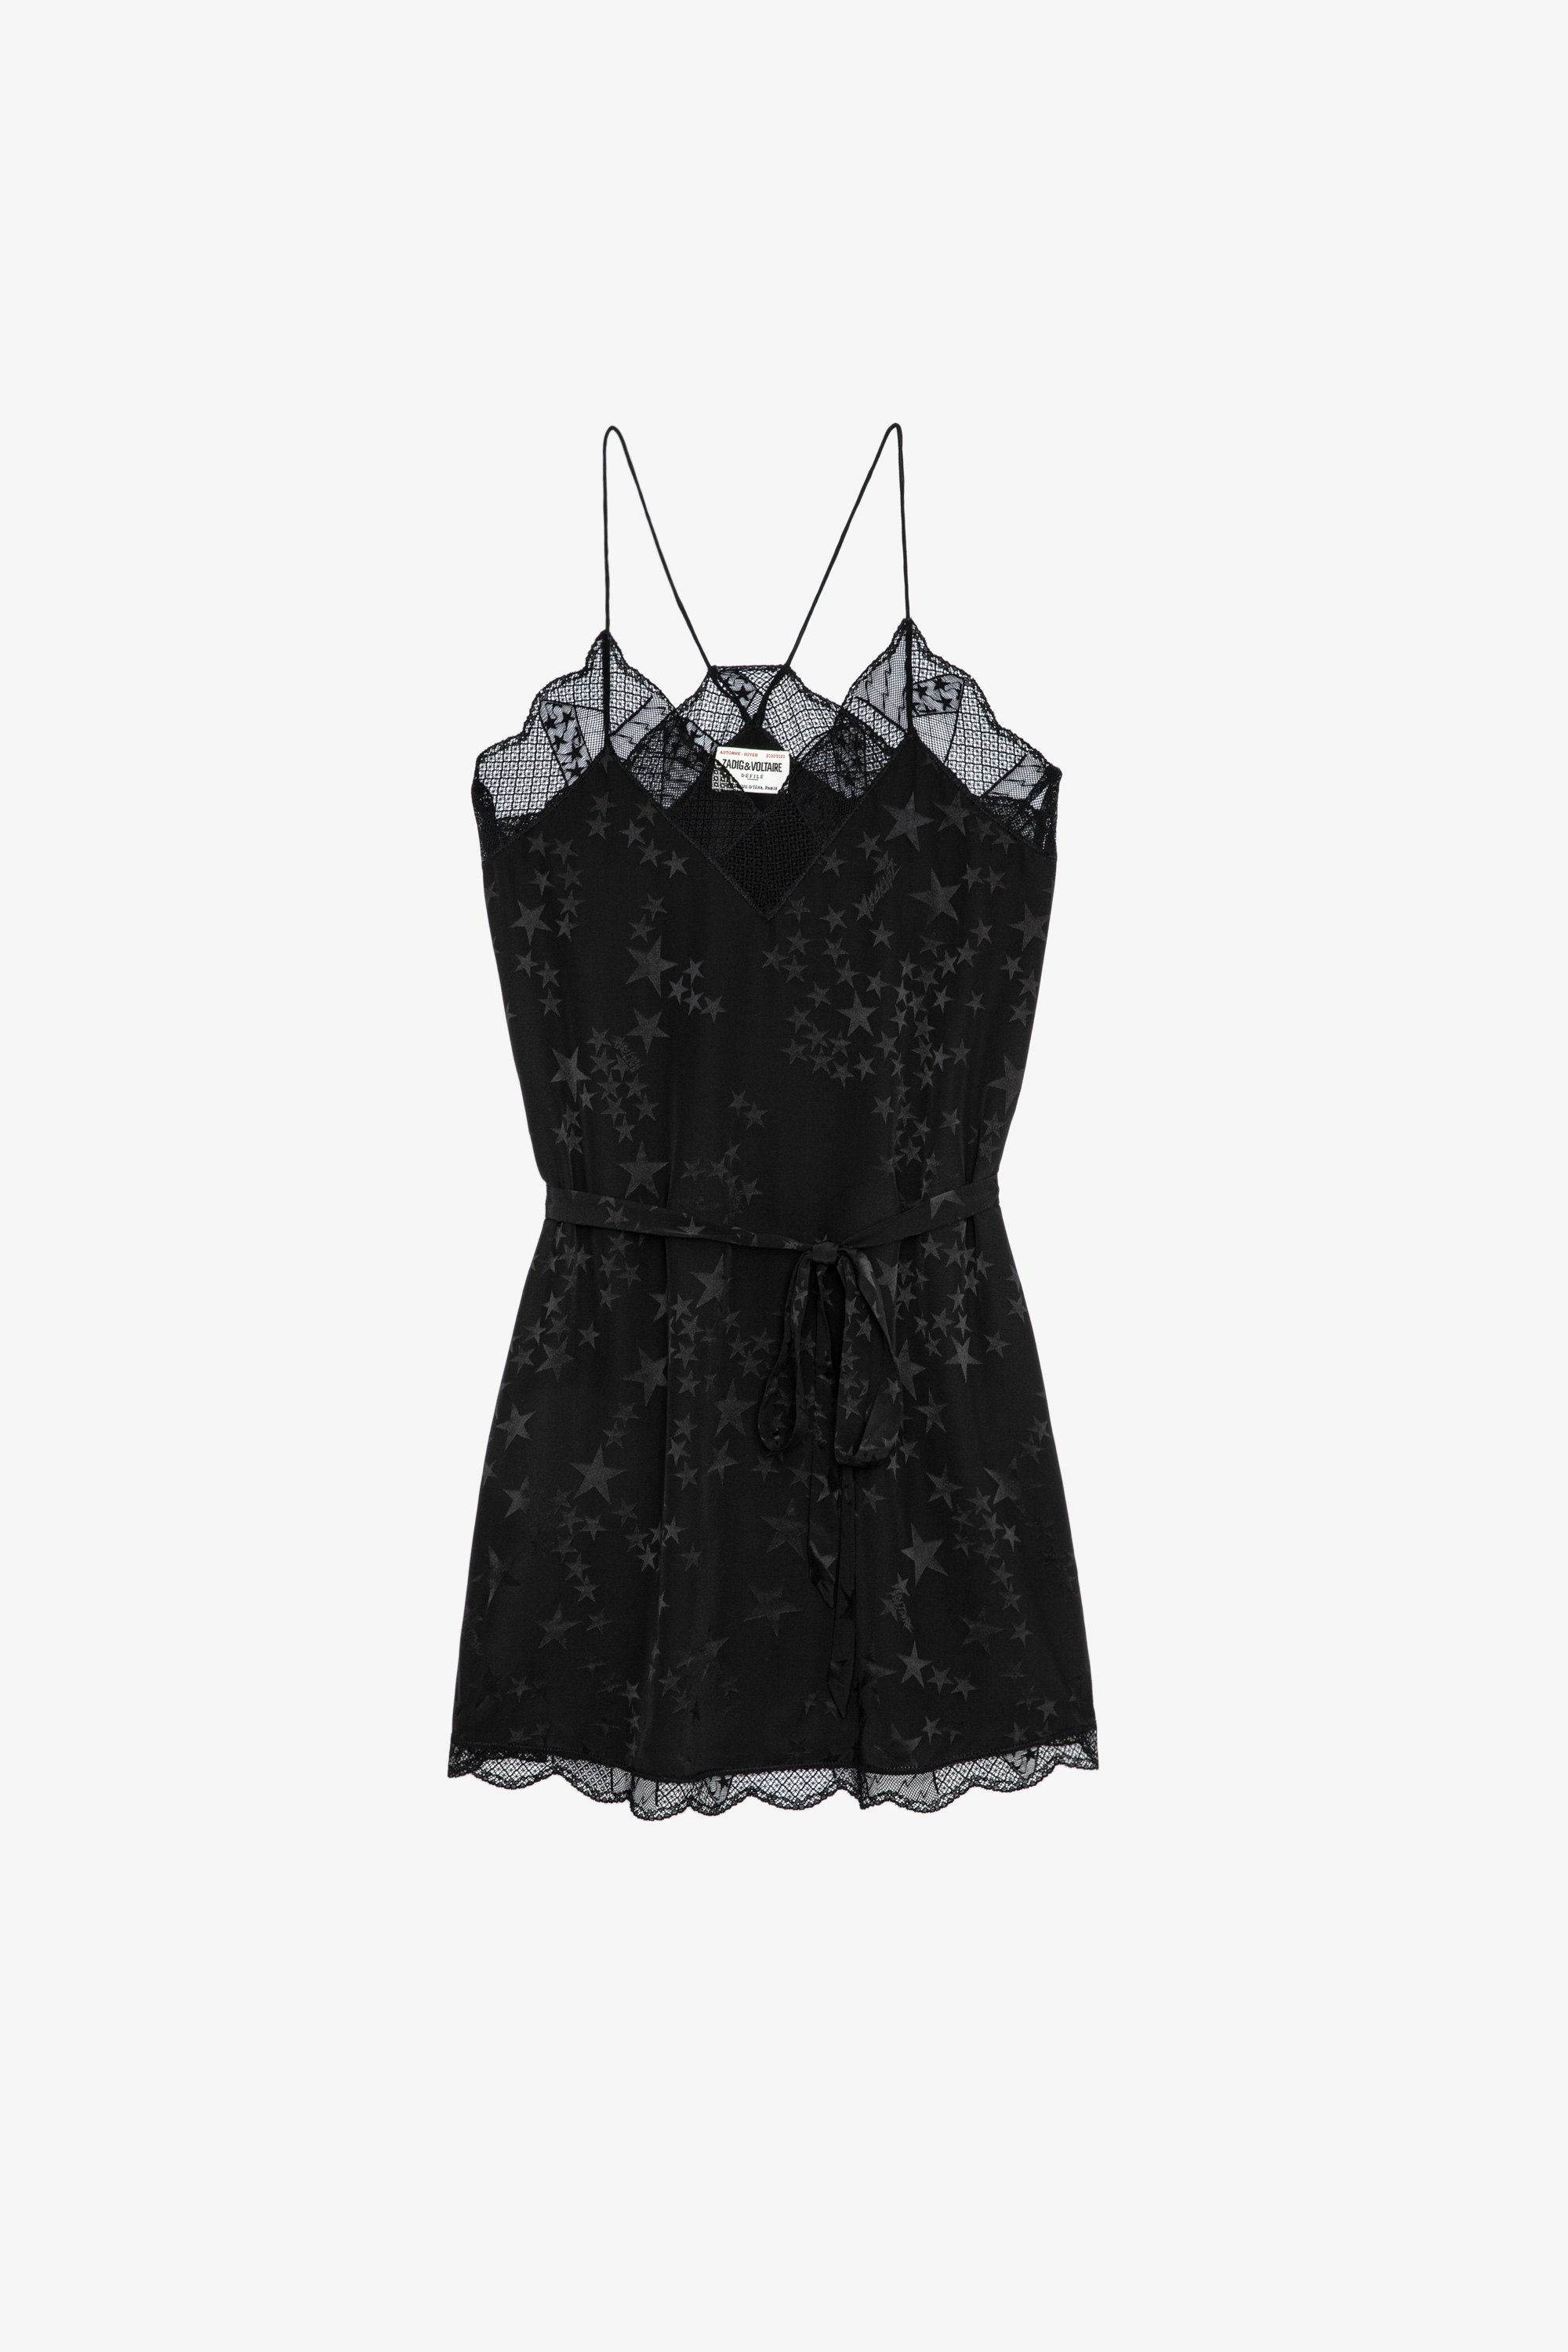 Kleid Ristyz Jac Stars Kurzes Damenkleid aus schwarzer Jacquard-Seide mit Sternenmotiv. Mit Taillengürtel und Spitzenabschlüssen.